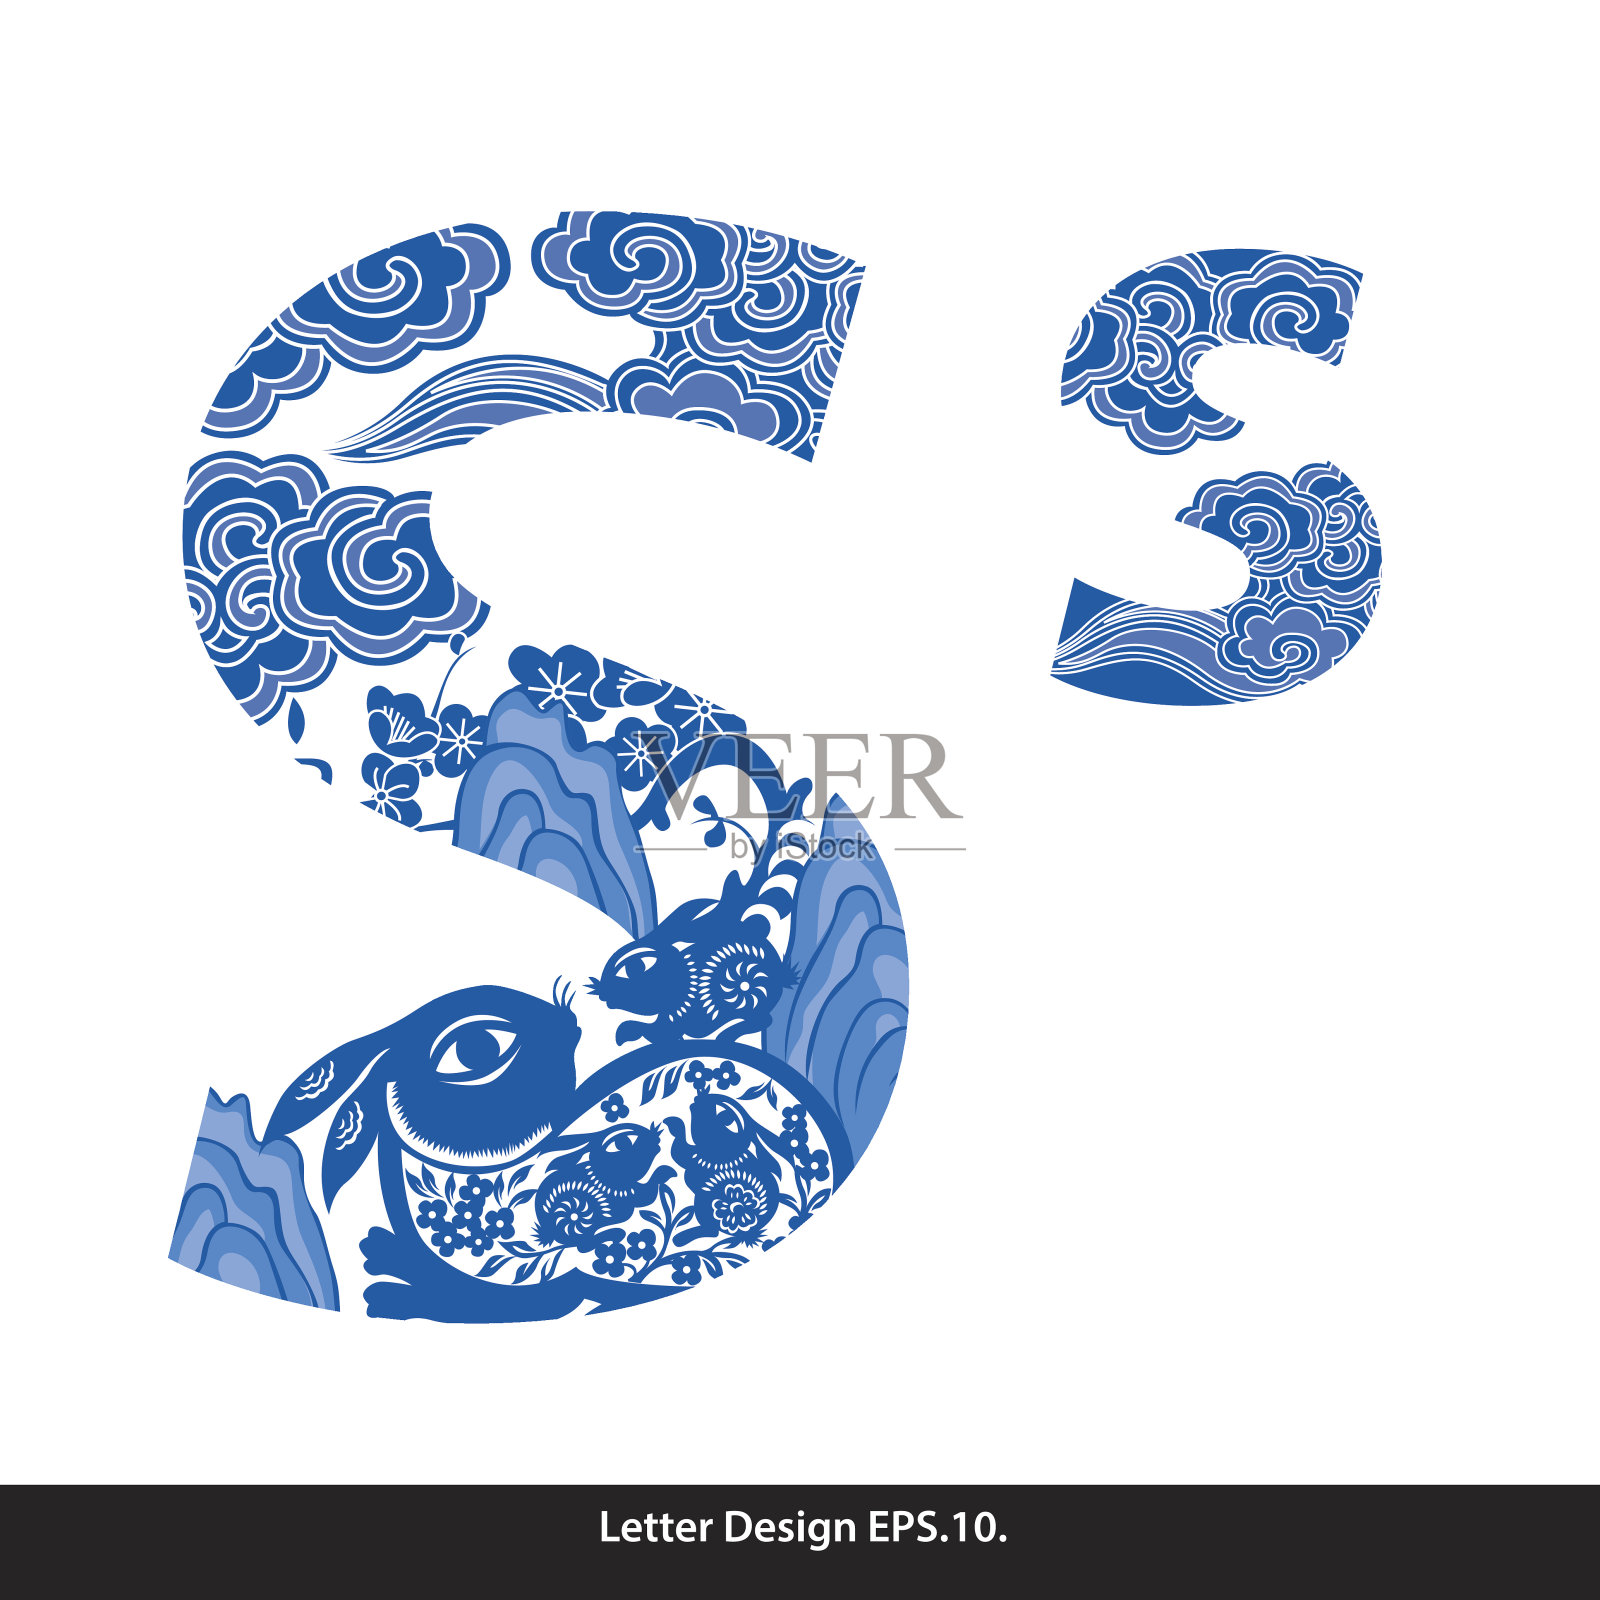 向量东方风格字母磁带s繁体中文设计元素图片